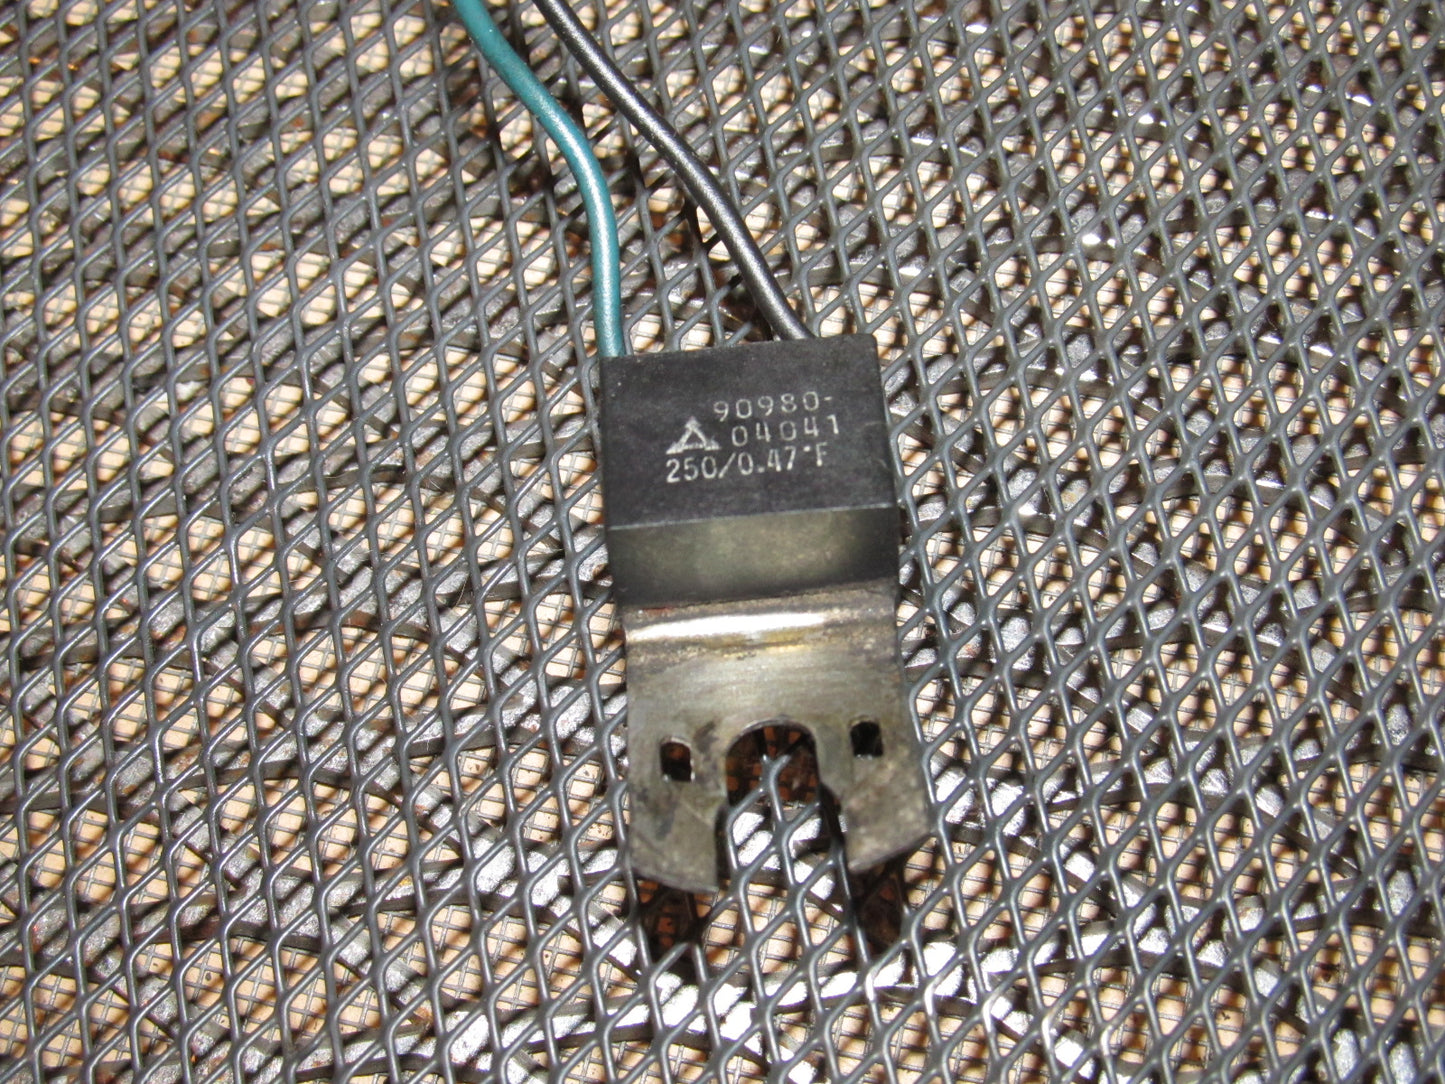 85 86 Toyota MR2 OEM Ignition Resistor Condenser - 90980-04041